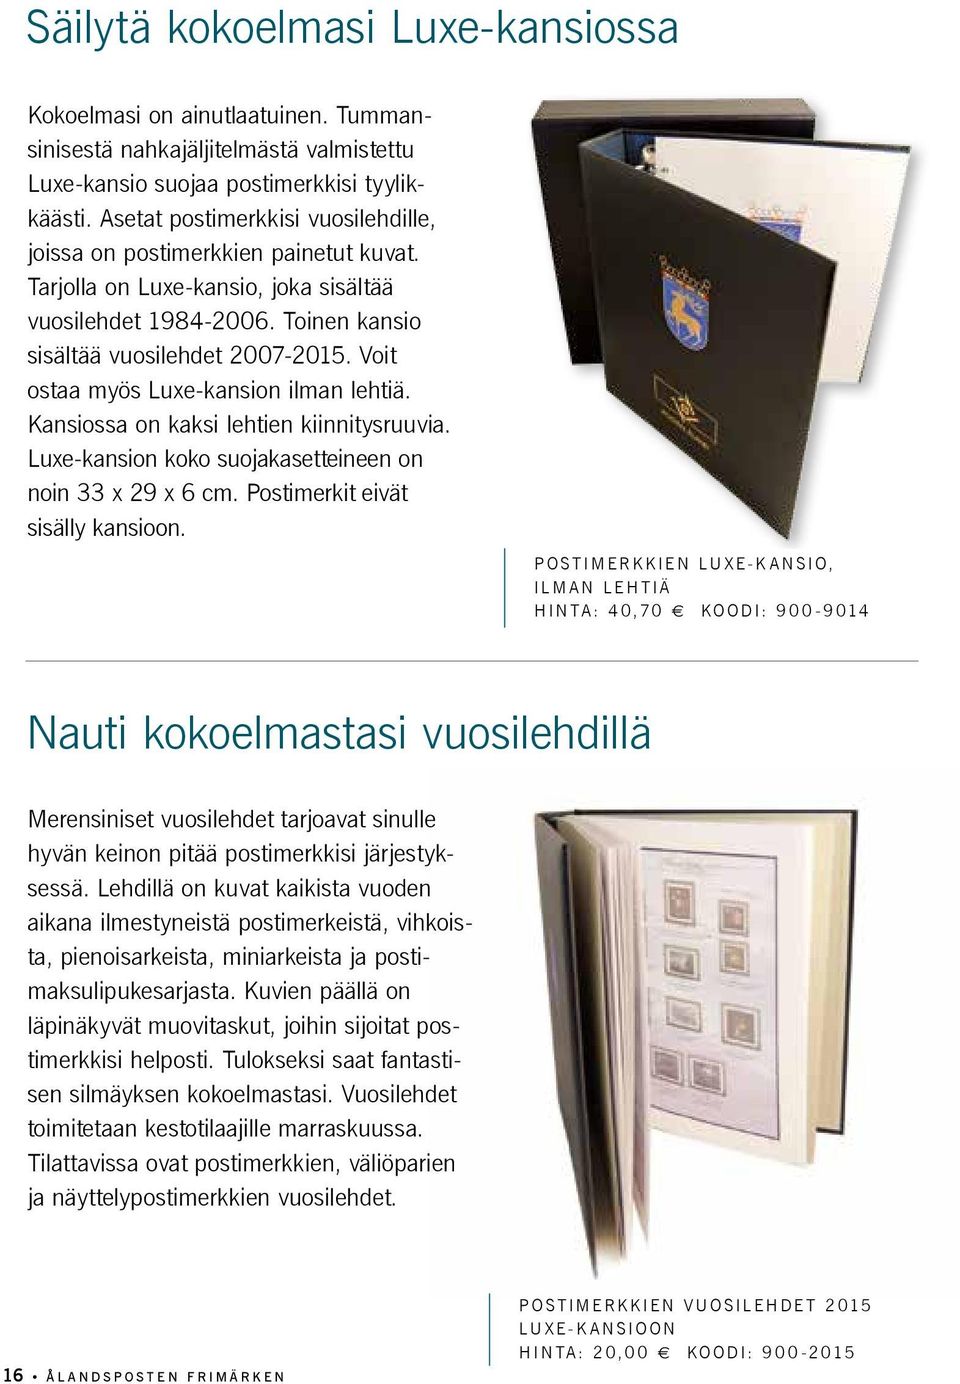 Voit ostaa myös Luxe-kansion ilman lehtiä. Kansiossa on kaksi lehtien kiinnitysruuvia. Luxe-kansion koko suojakasetteineen on noin 33 x 29 x 6 cm. Postimerkit eivät sisälly kansioon.